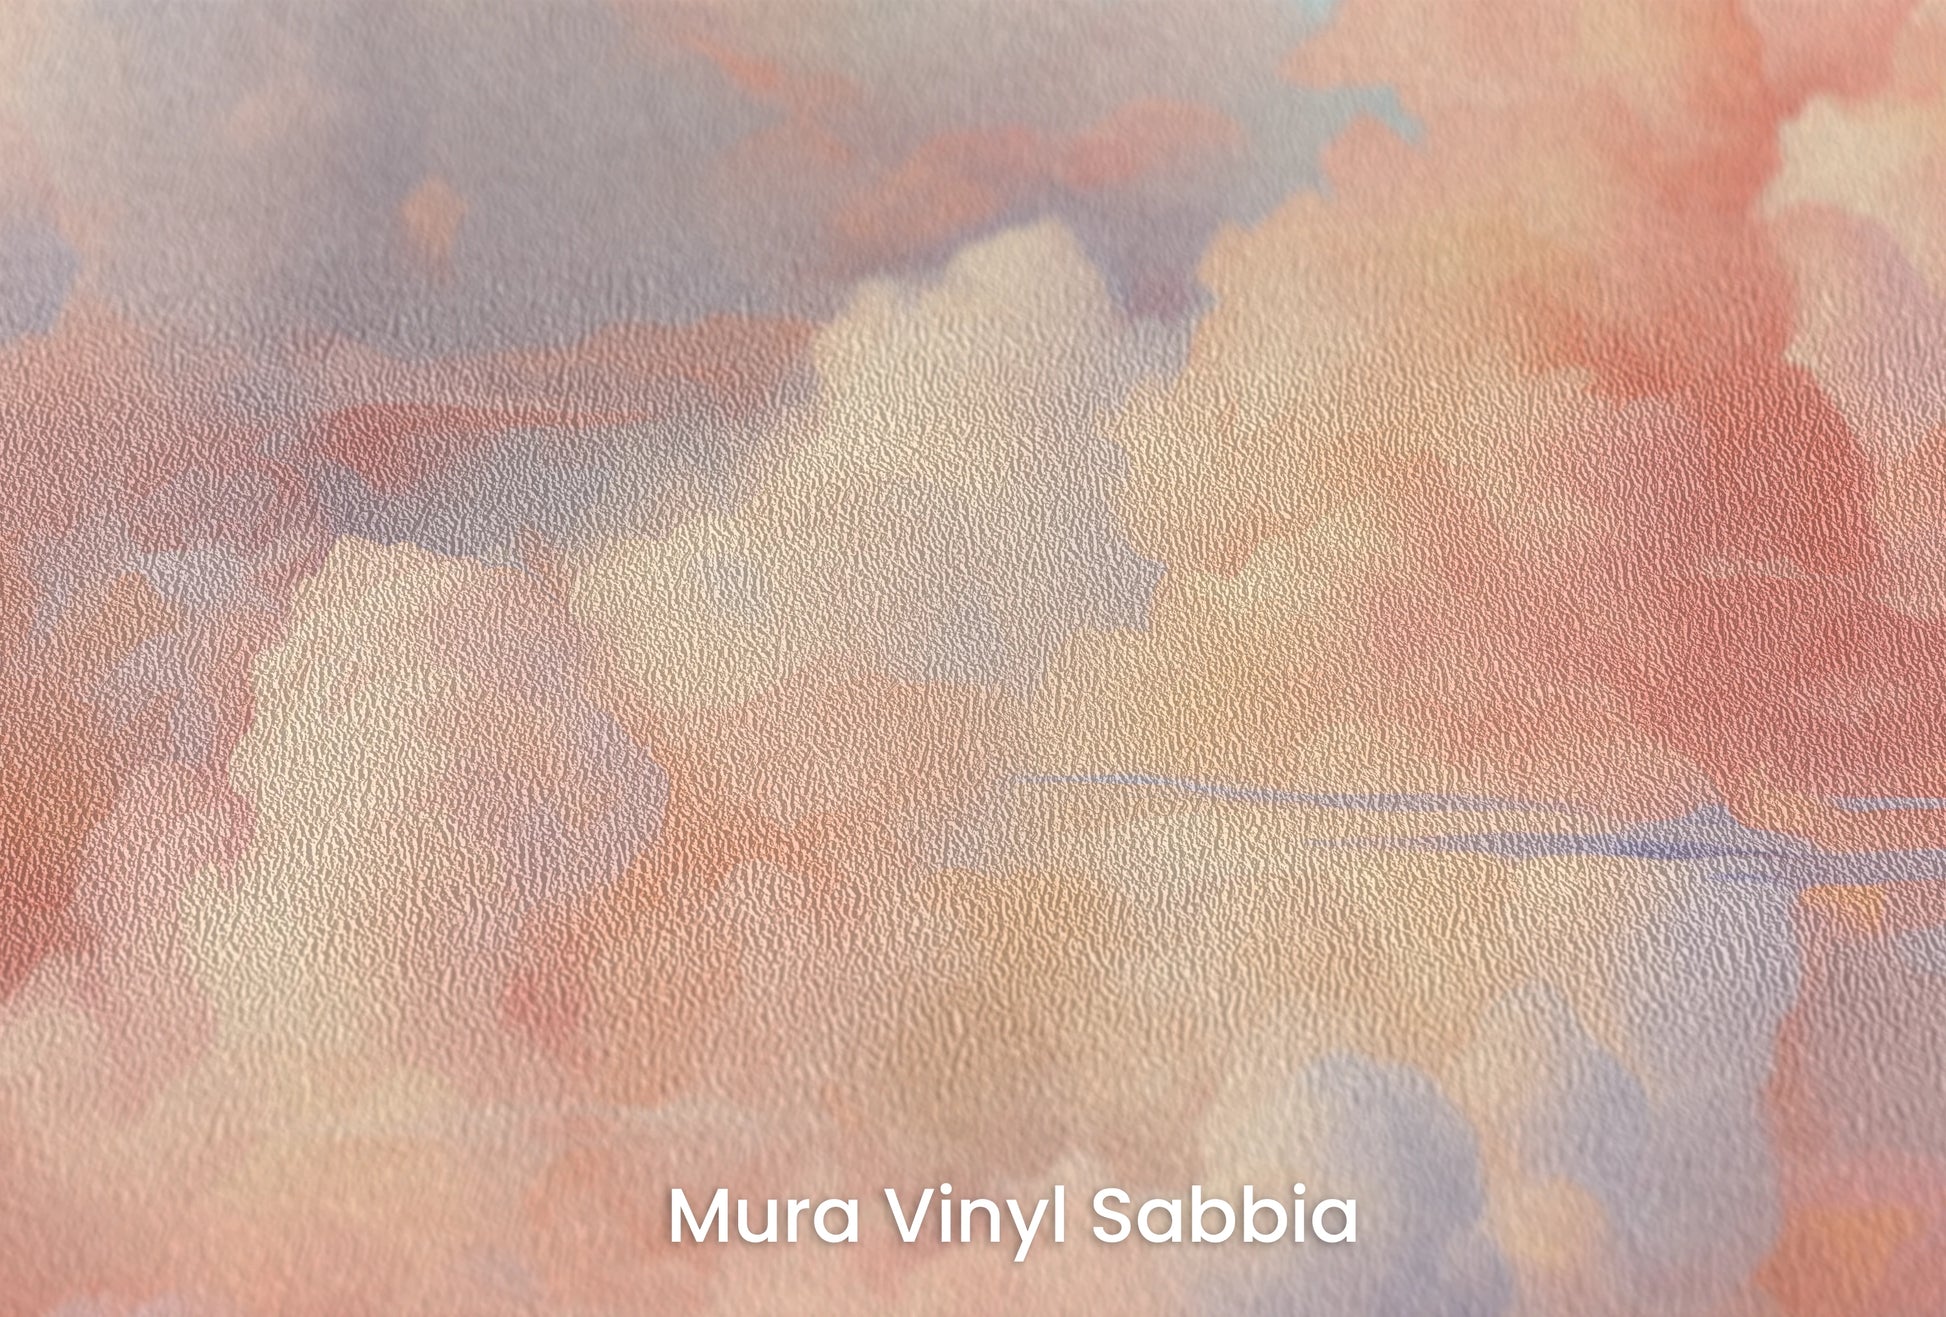 Zbliżenie na artystyczną fototapetę o nazwie Blushing Skies na podłożu Mura Vinyl Sabbia struktura grubego ziarna piasku.